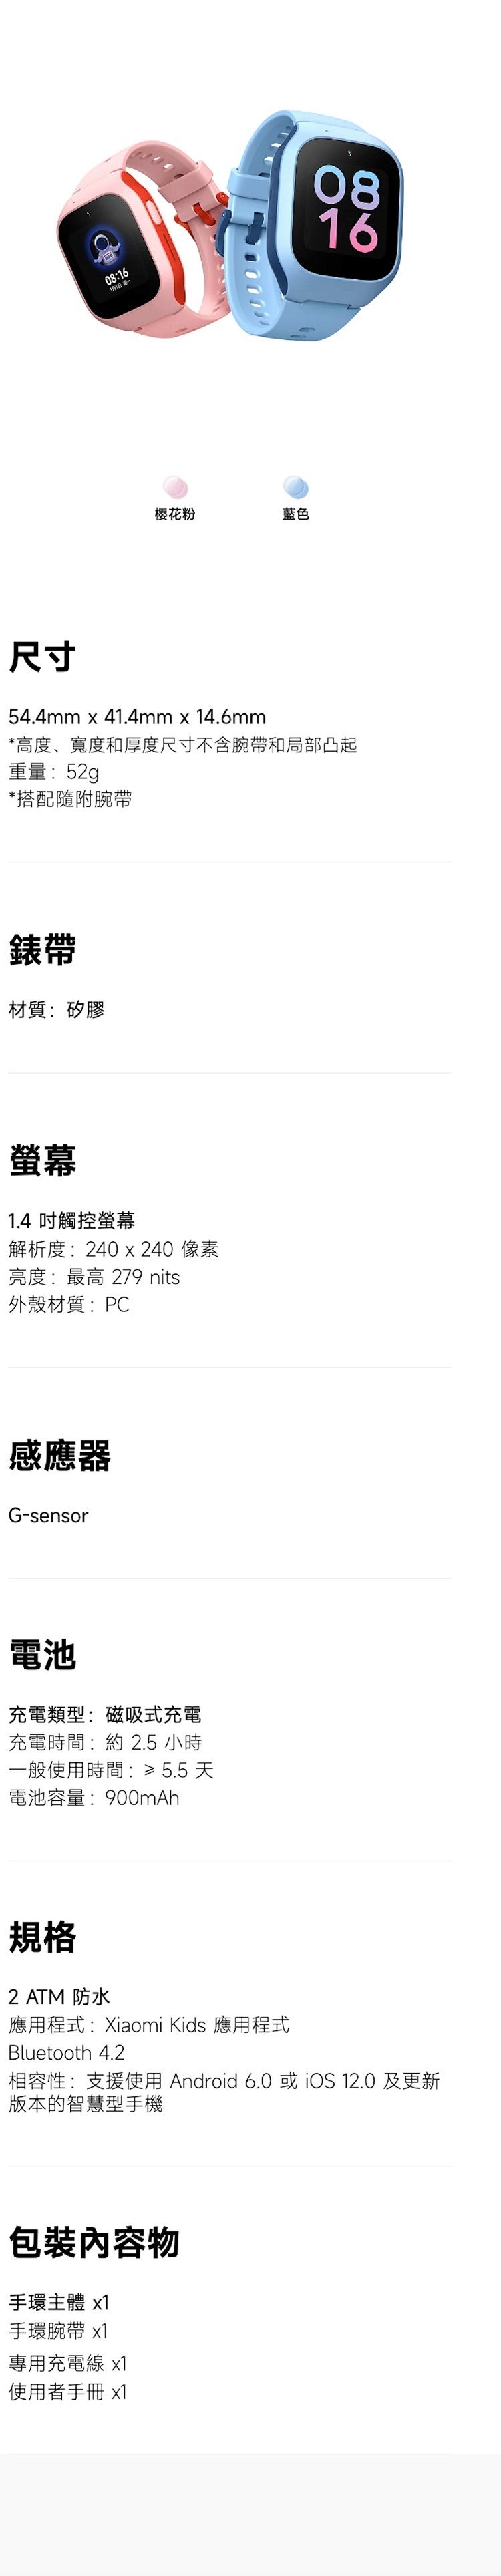 08:16᯻Ŧ088816ؤo54.4mm x 41.4mm x 14.6mm*סBeשMpפؤotñaMY_q:52g*ftHñaa:ù1.4 ĲùѪR:240 x 240 G:̰ 279 nits~ߧ:PCPG-sensorqRq:ϧlRqRqɶ: 2.5 pɤ@ϥήɶ:? 5.5 ѹqeq:900mAhW2 ATM ε{:Xiaomi Kids ε{Bluetooth 4.2ۮe:䴩ϥ Android 6.0  12.0 Χsz]ˤeD x1ña x1MΥRqu x1ϥΪ̤U x1